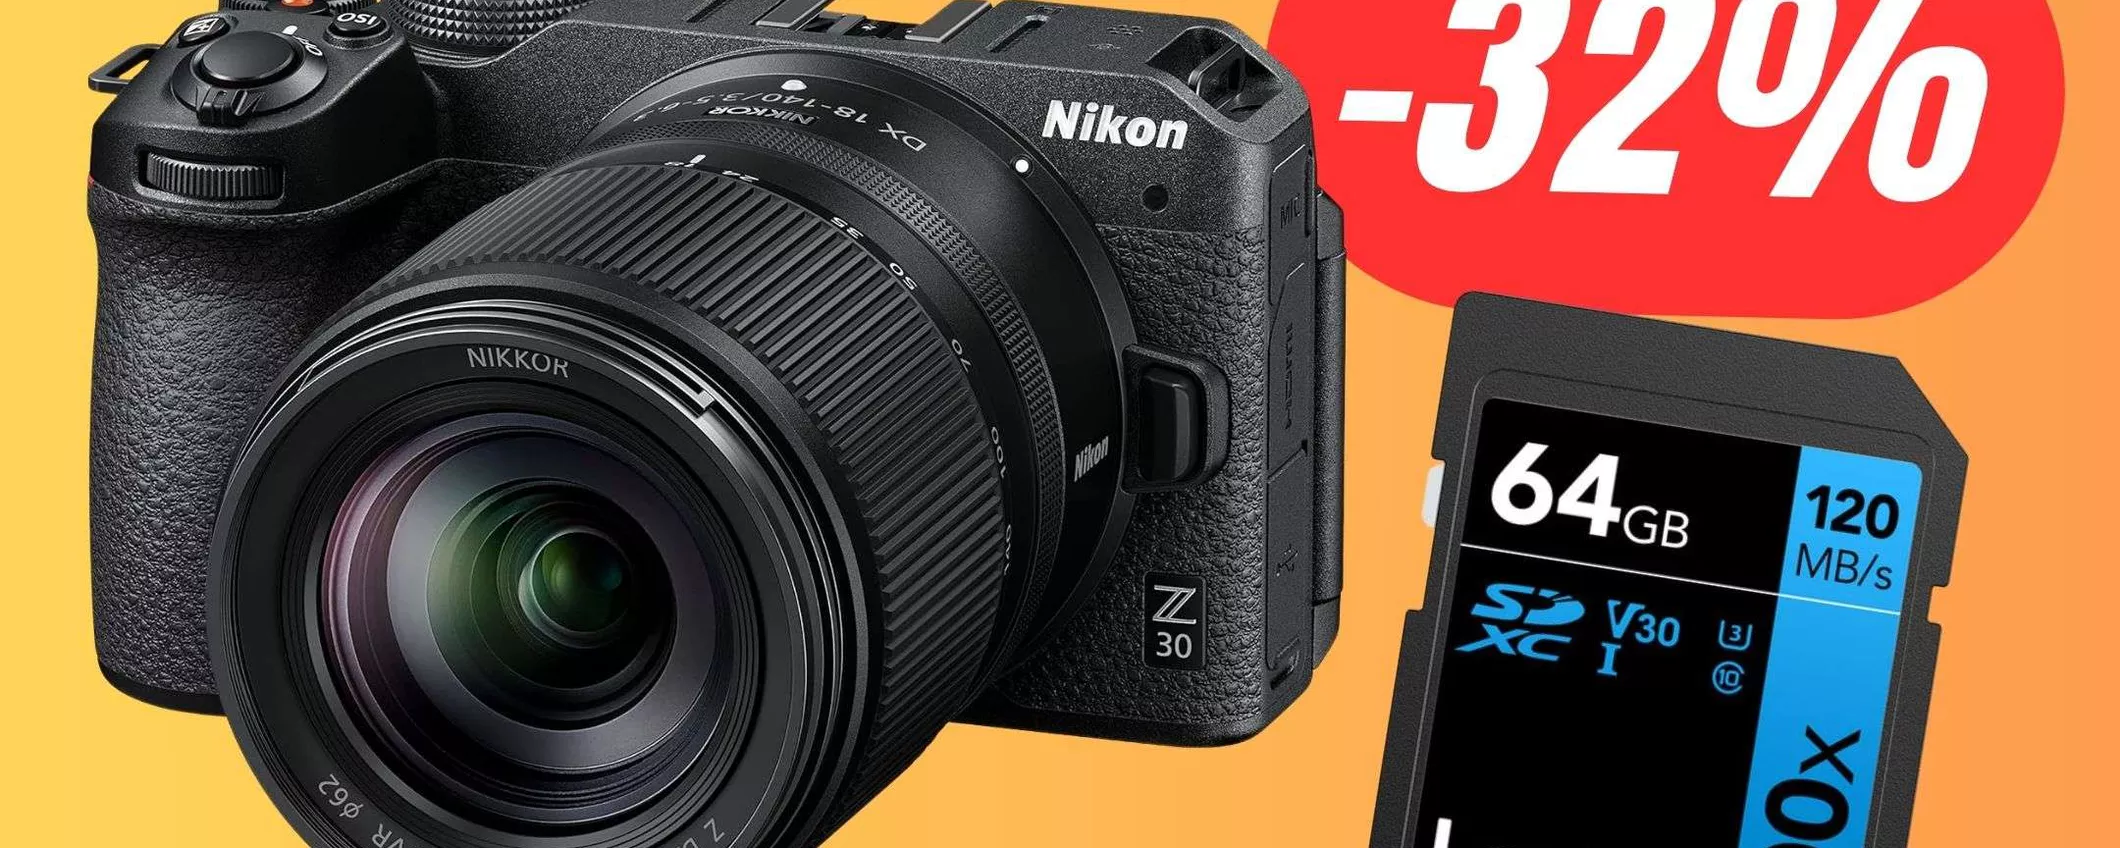 La fotocamera Nikon Z30 con OTTICA e Memoria SD 64GB è scontata di 413€